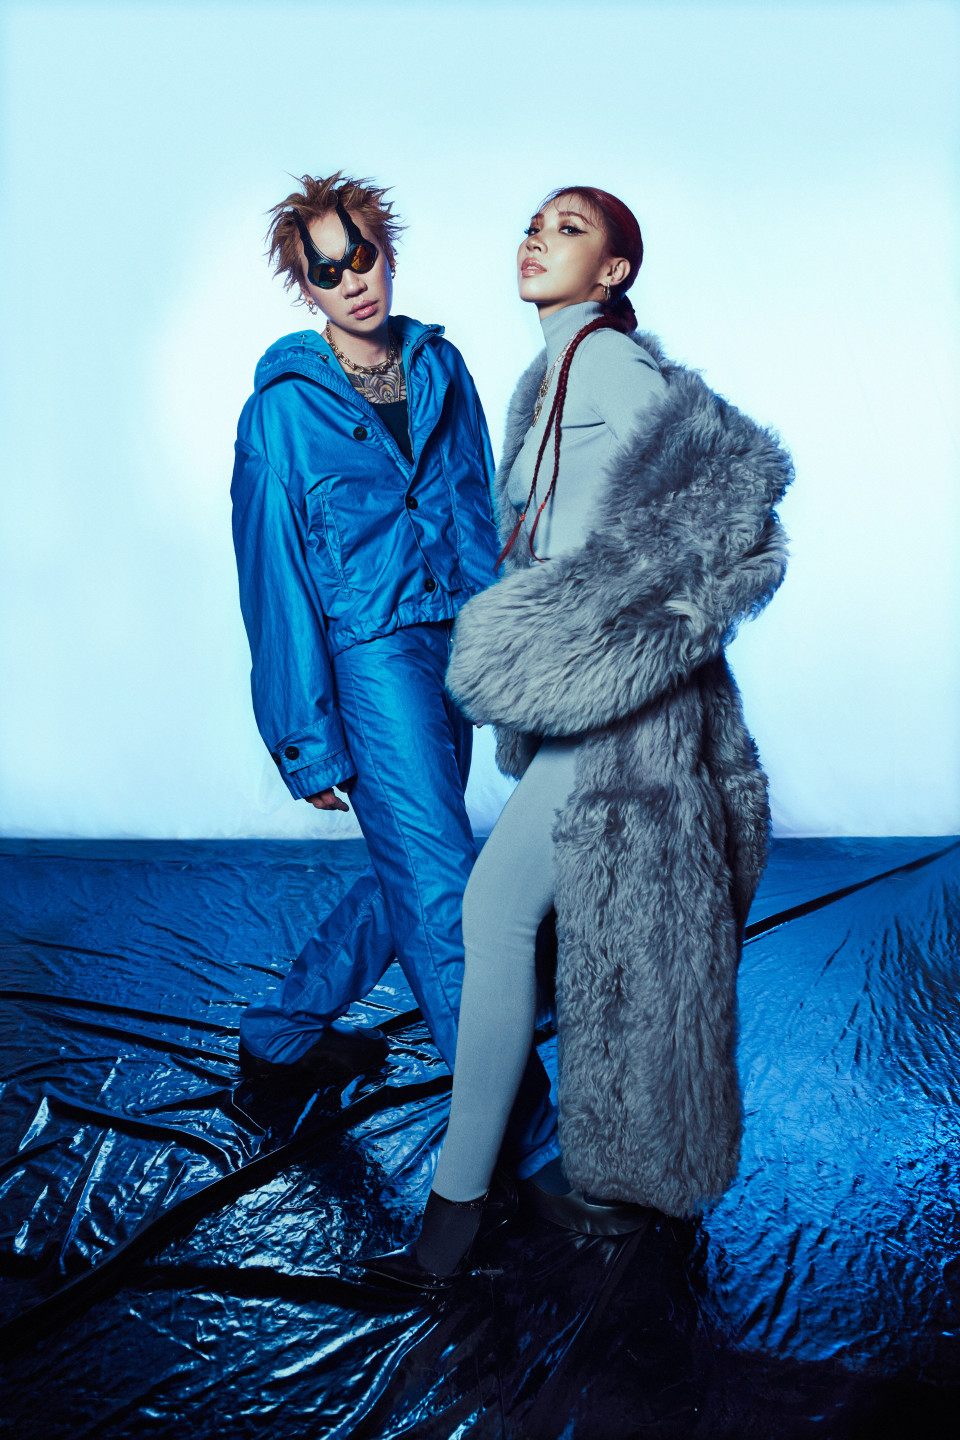 音樂鬼才的Starr Chen陳星翰及超強女聲Karencici攜手為本屆「臺北時裝週 X Vogue FNO」創作主題曲(2)